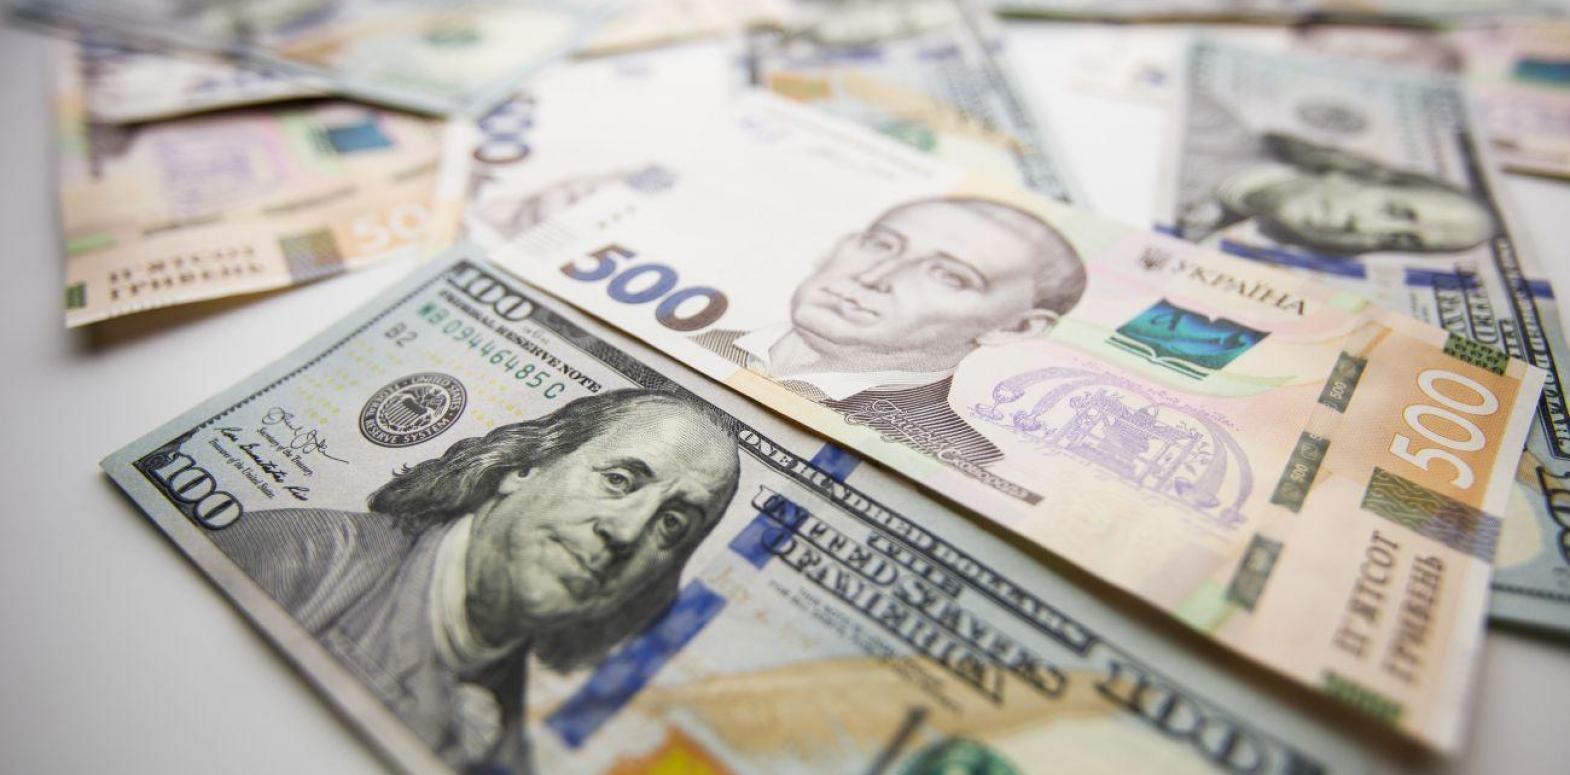 НБУ повысил курс доллара после снижения четыре дня подряд